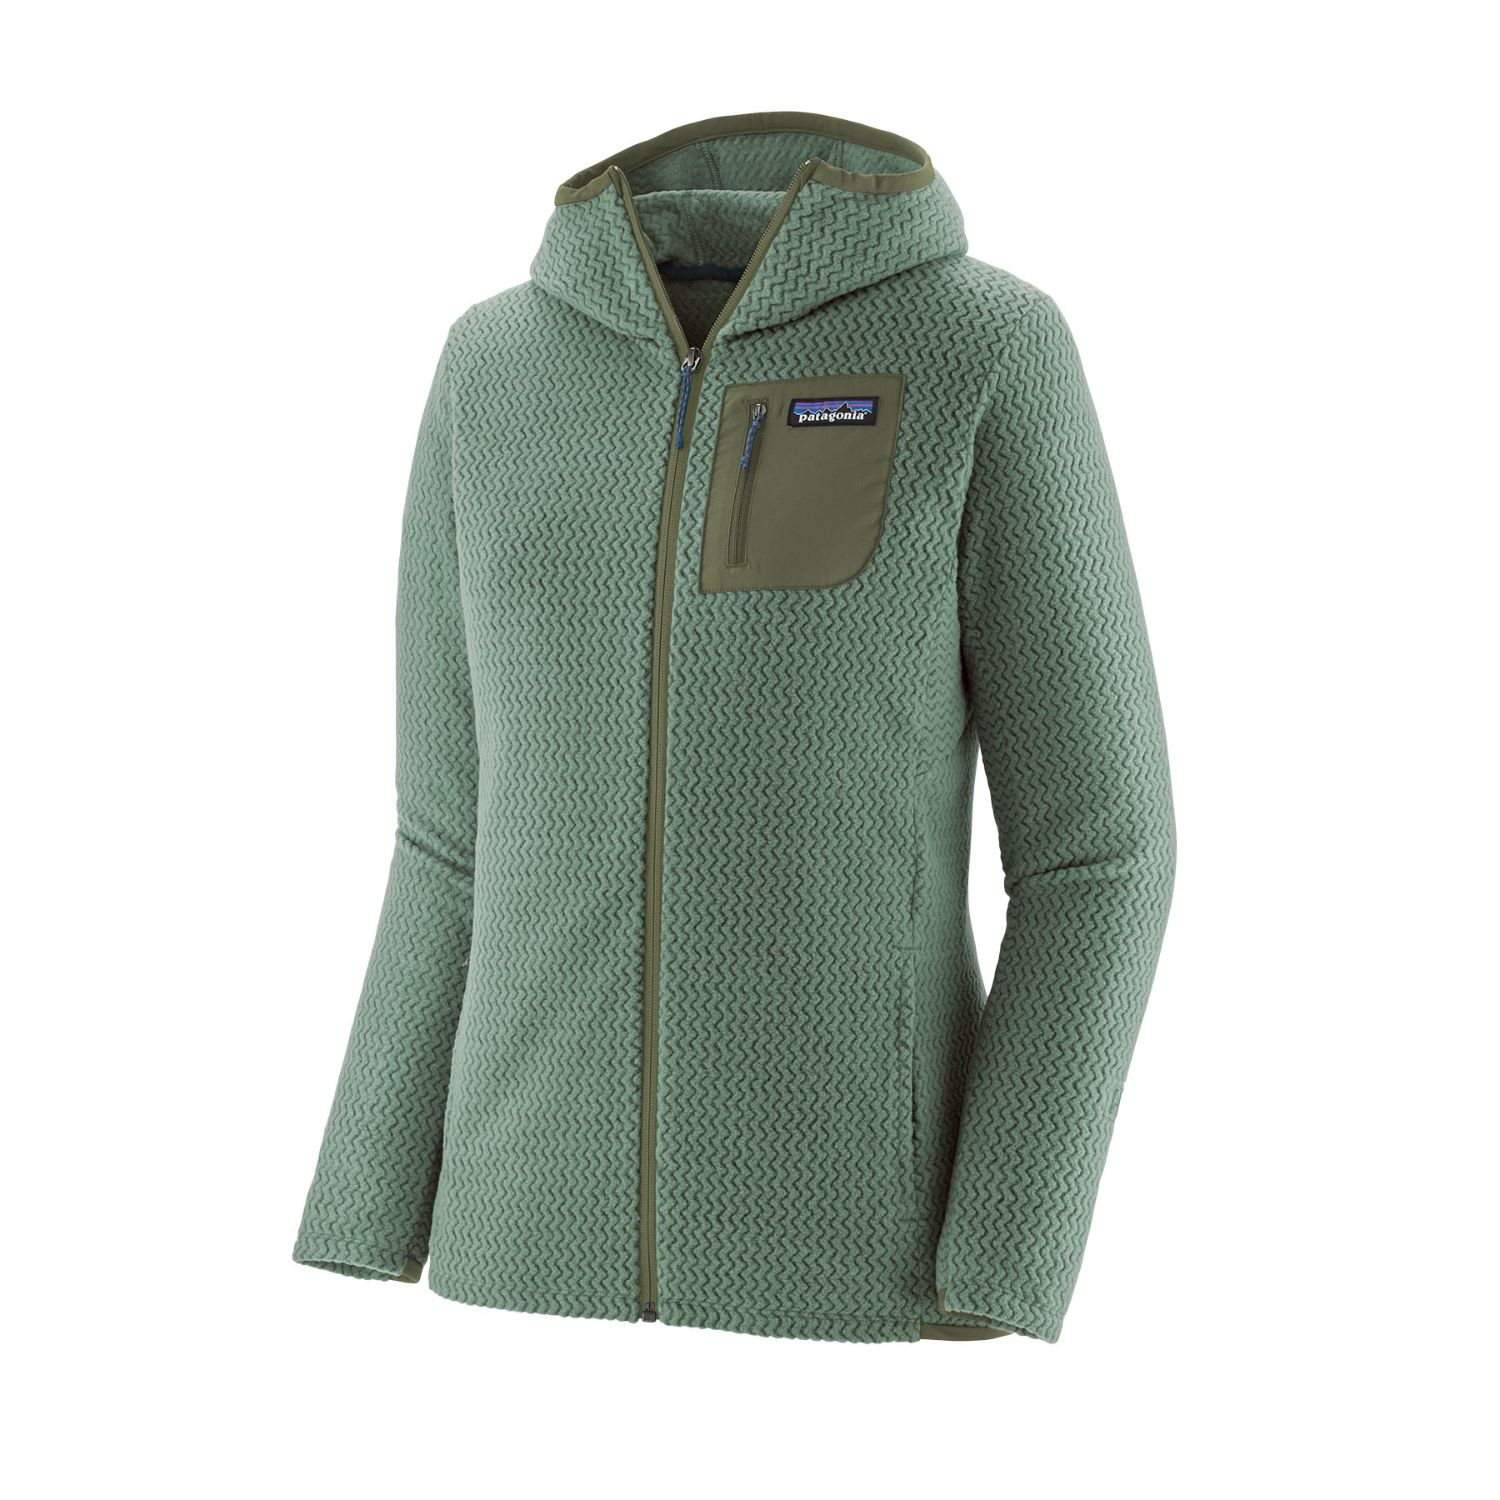 Patagonia Womens R1 Air Hemlock Green Full Zip Hooded Jacket: L